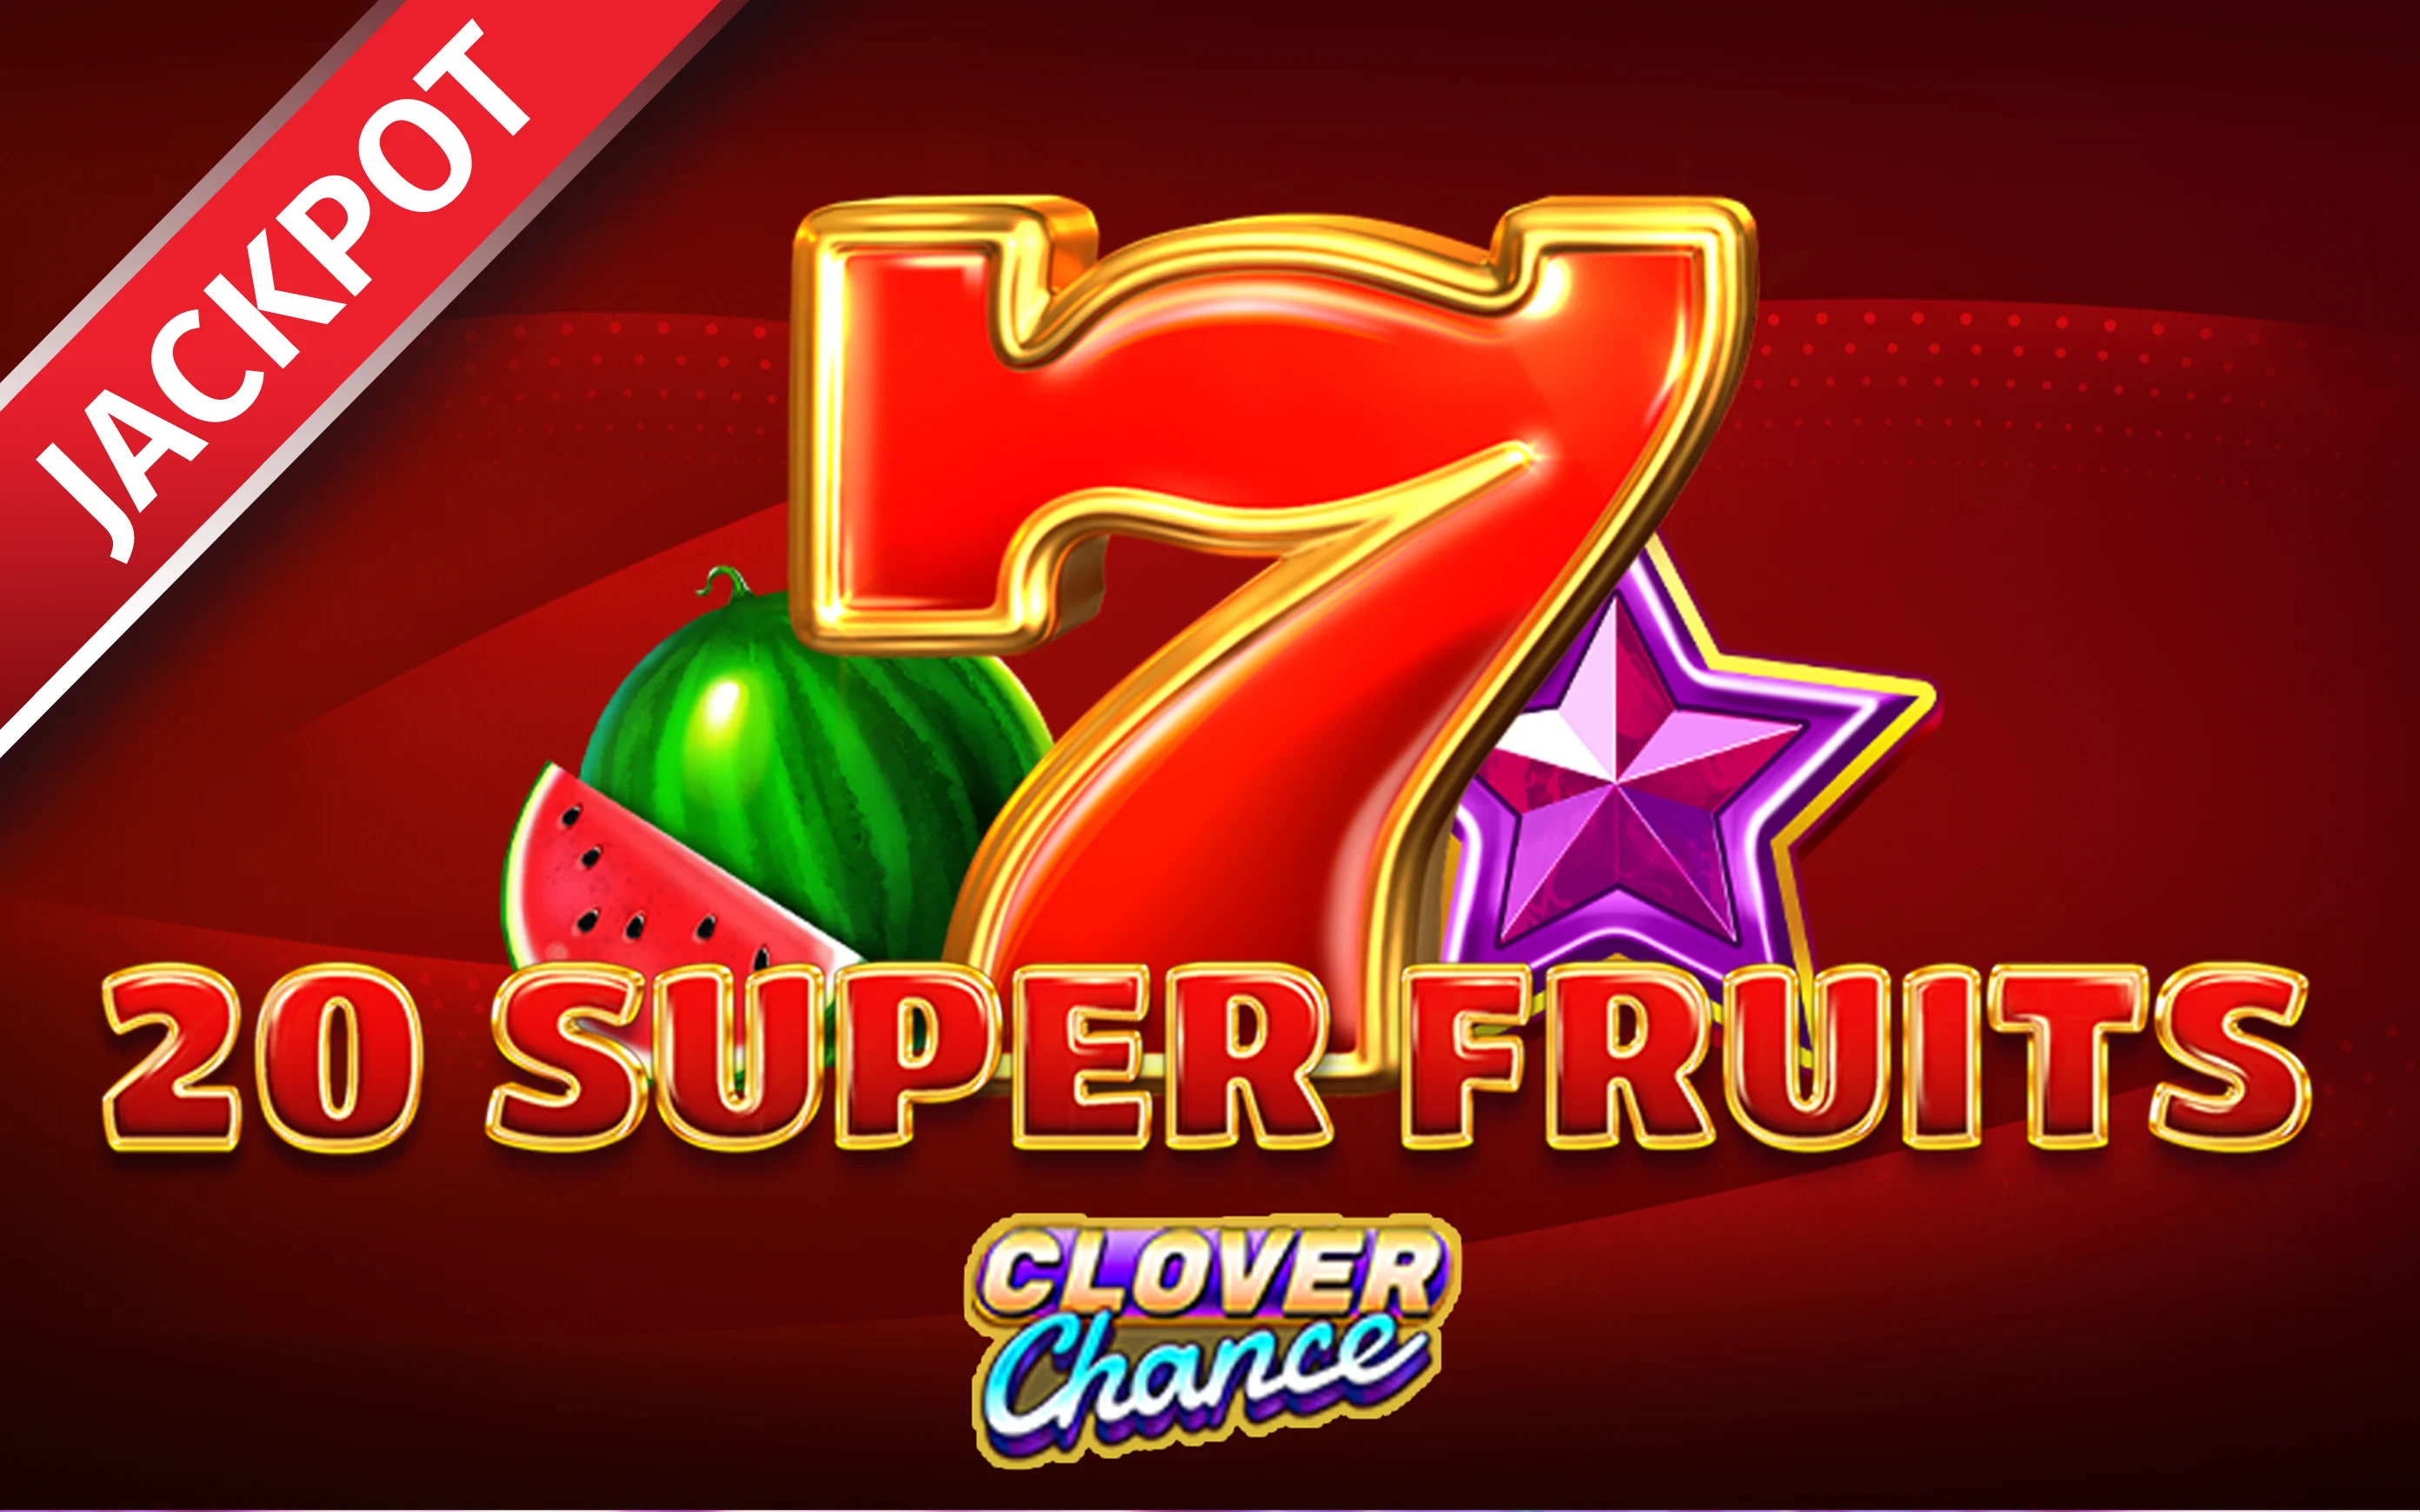 Jouer à 20 Super Fruits Clover Chance sur le casino en ligne Starcasino.be